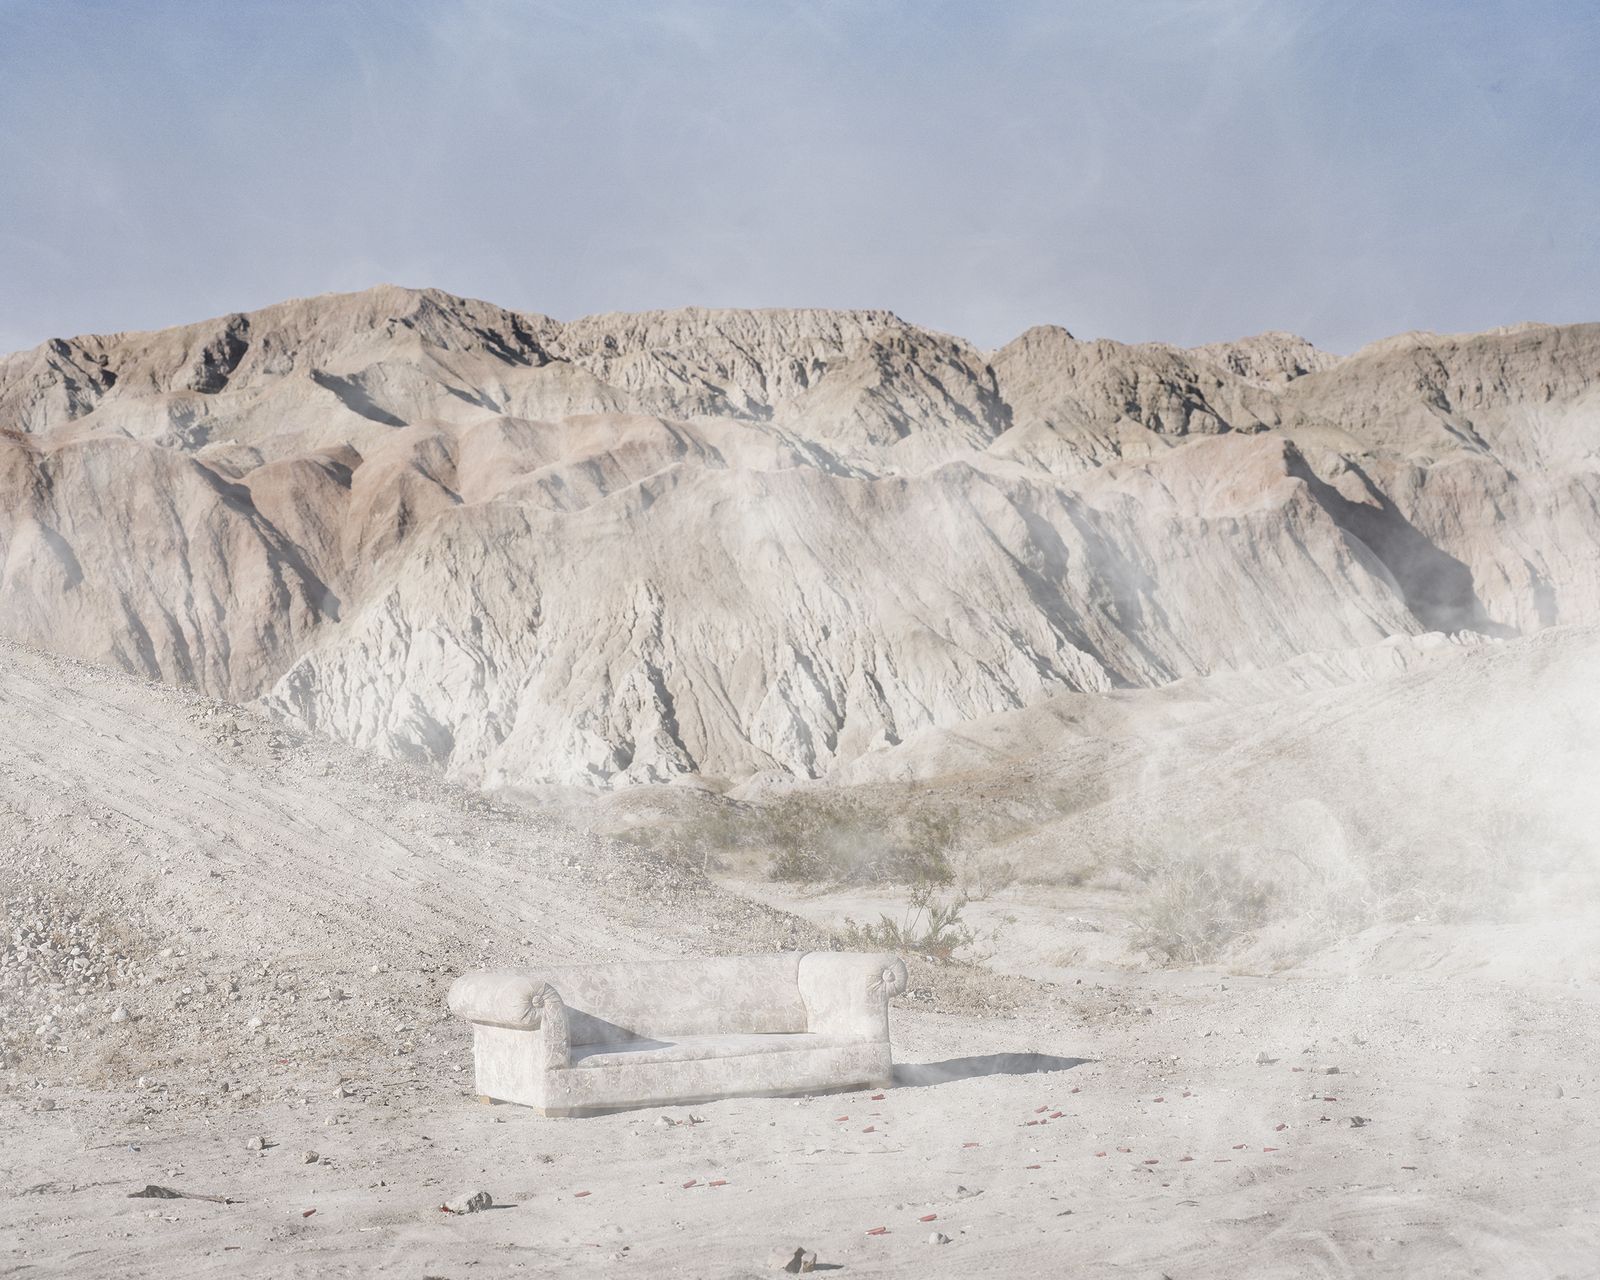 © Antone  Dolezal - Shooting Range, Death Valley, CA